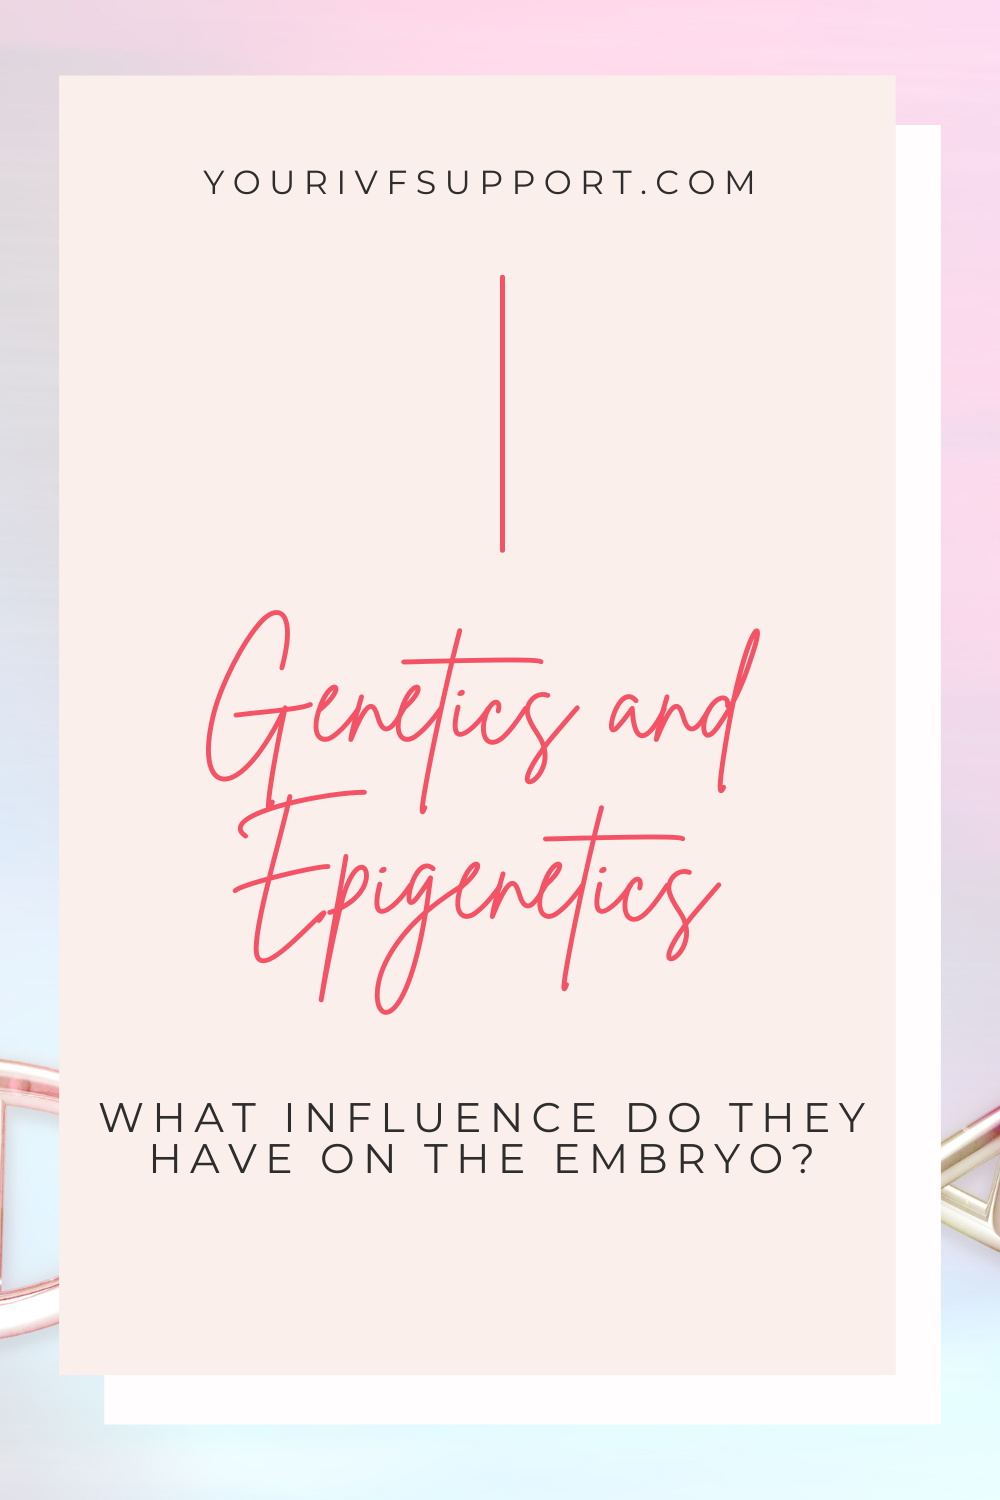 Genetics and Epigenetics